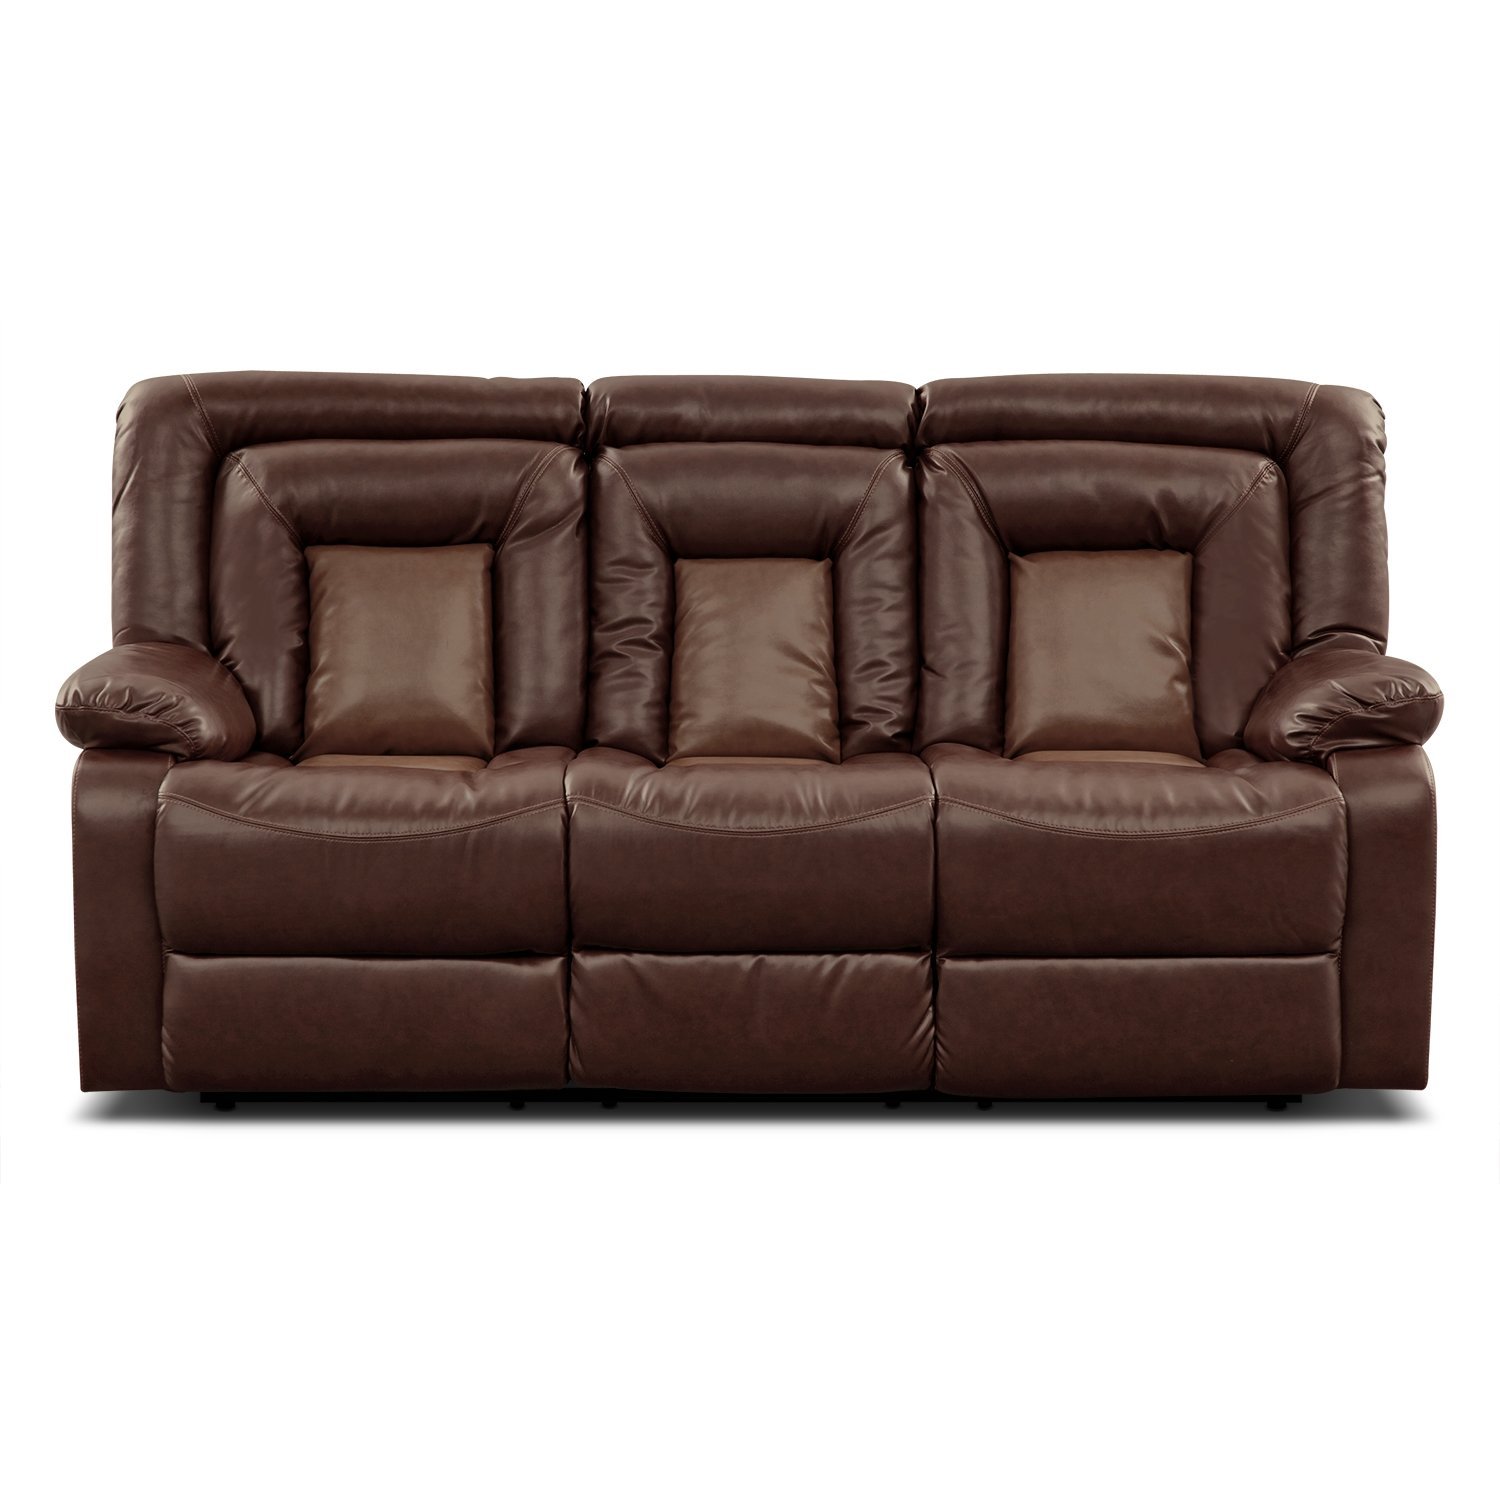 Furnituremaxx Kmax Reclining Sofa and Loveseat Set w/ Drop Console